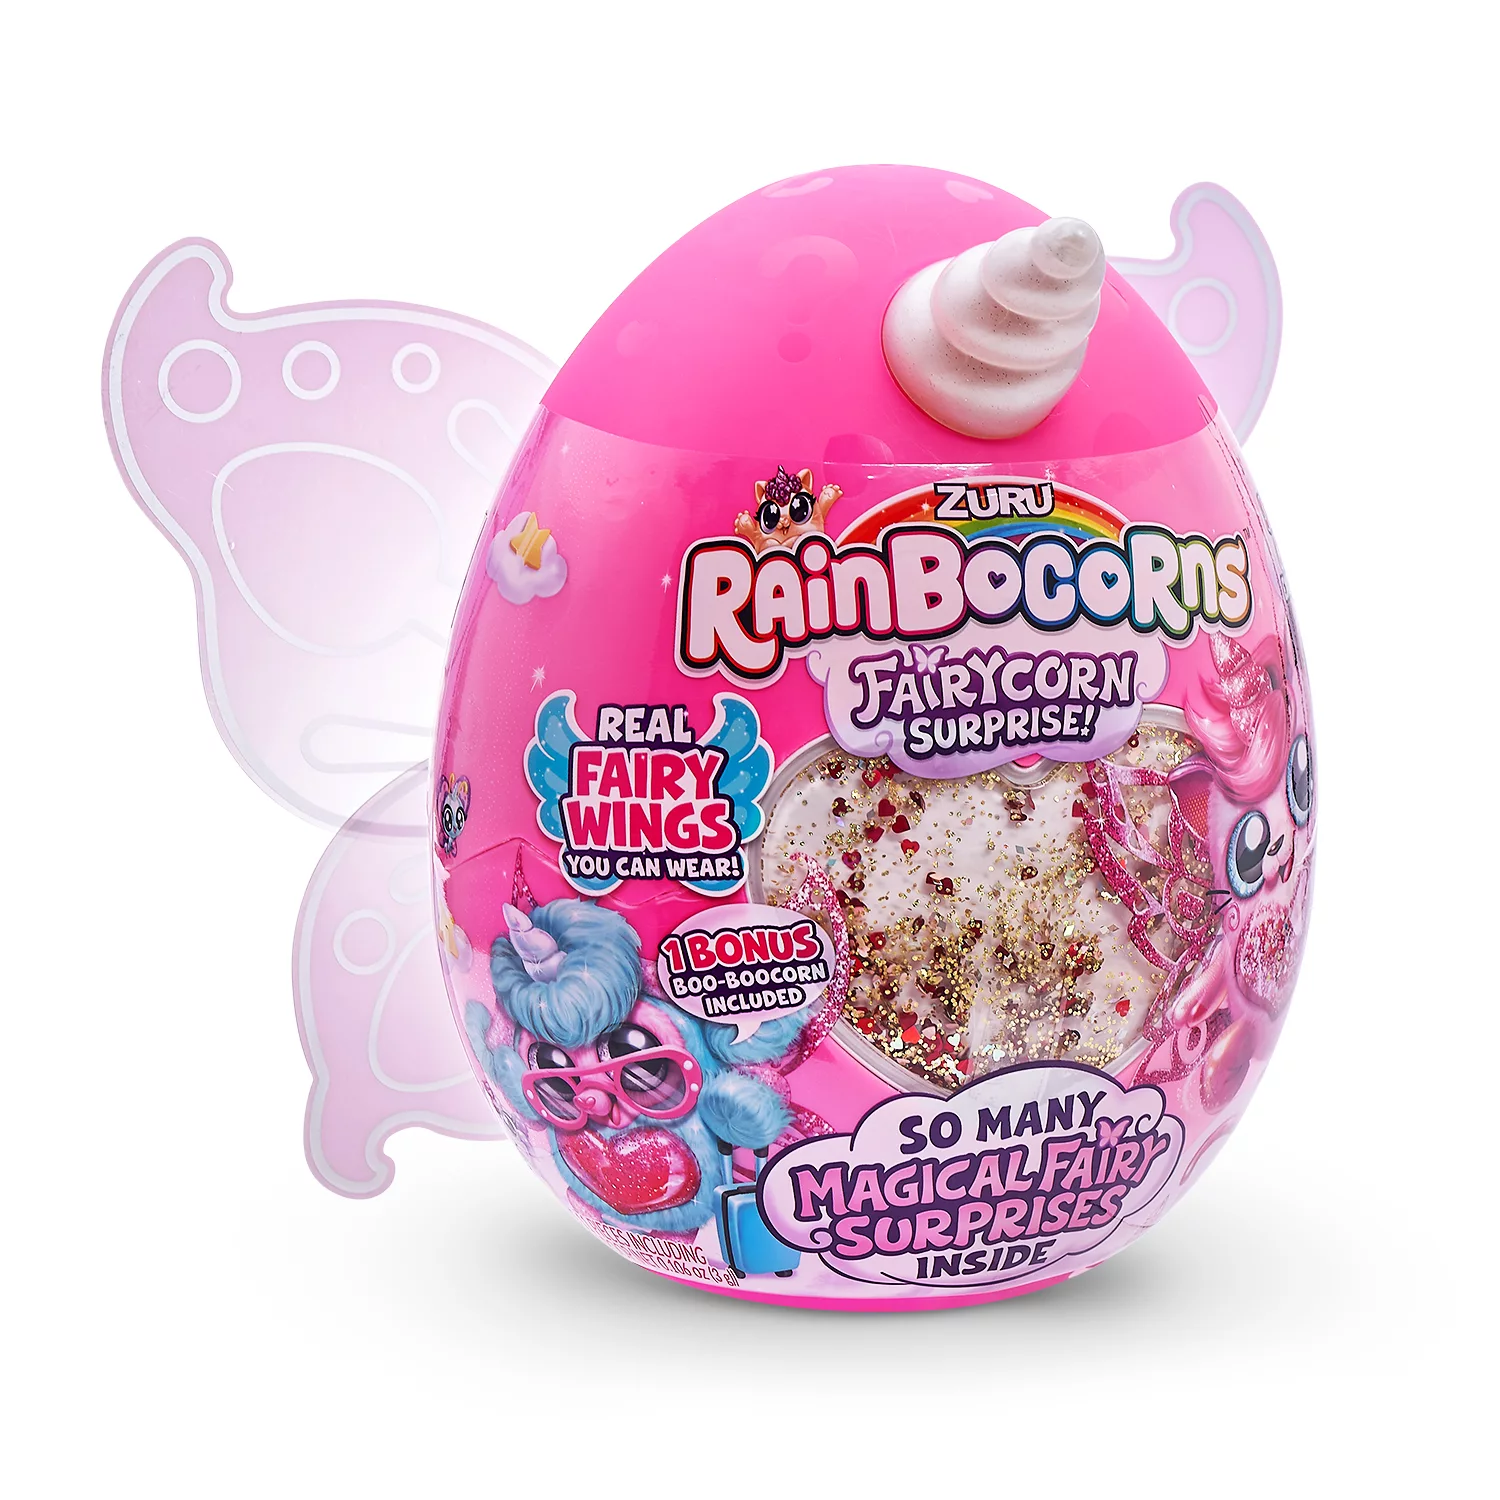 Rainbocorns Sequin Surprise Series 2 Plush - Best Toys and Games